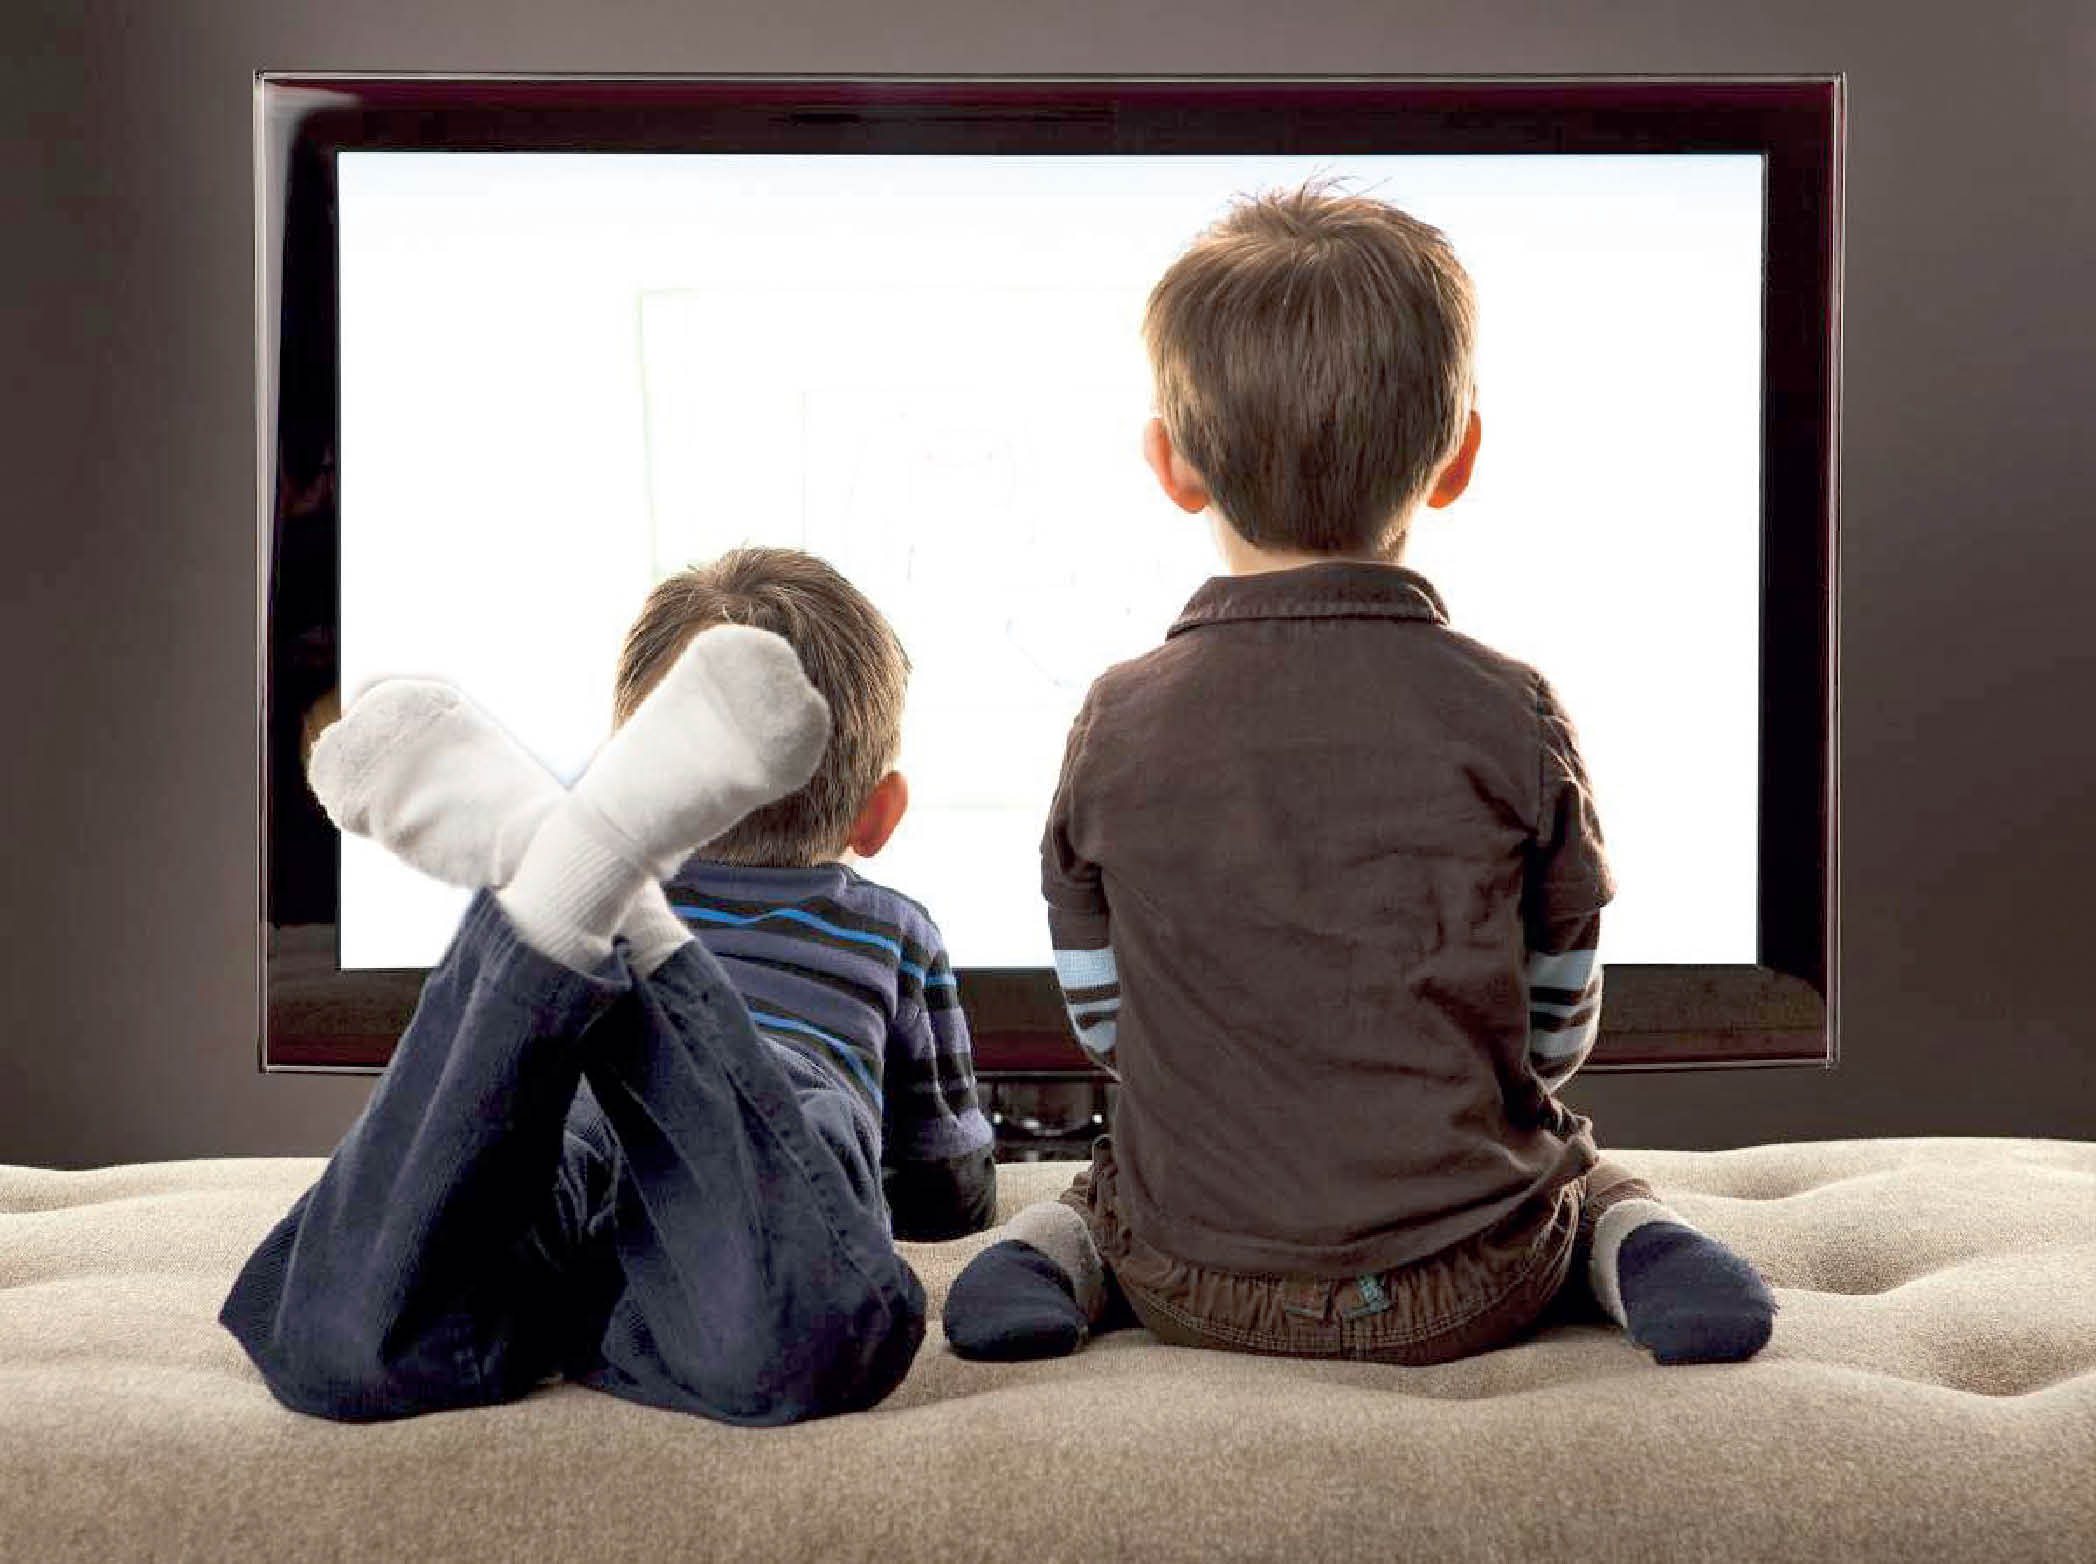 اگر از تماشای بیش از حد تلویزیون و بازی کردن  های کامپیوتری کودک تان خسته شده اید